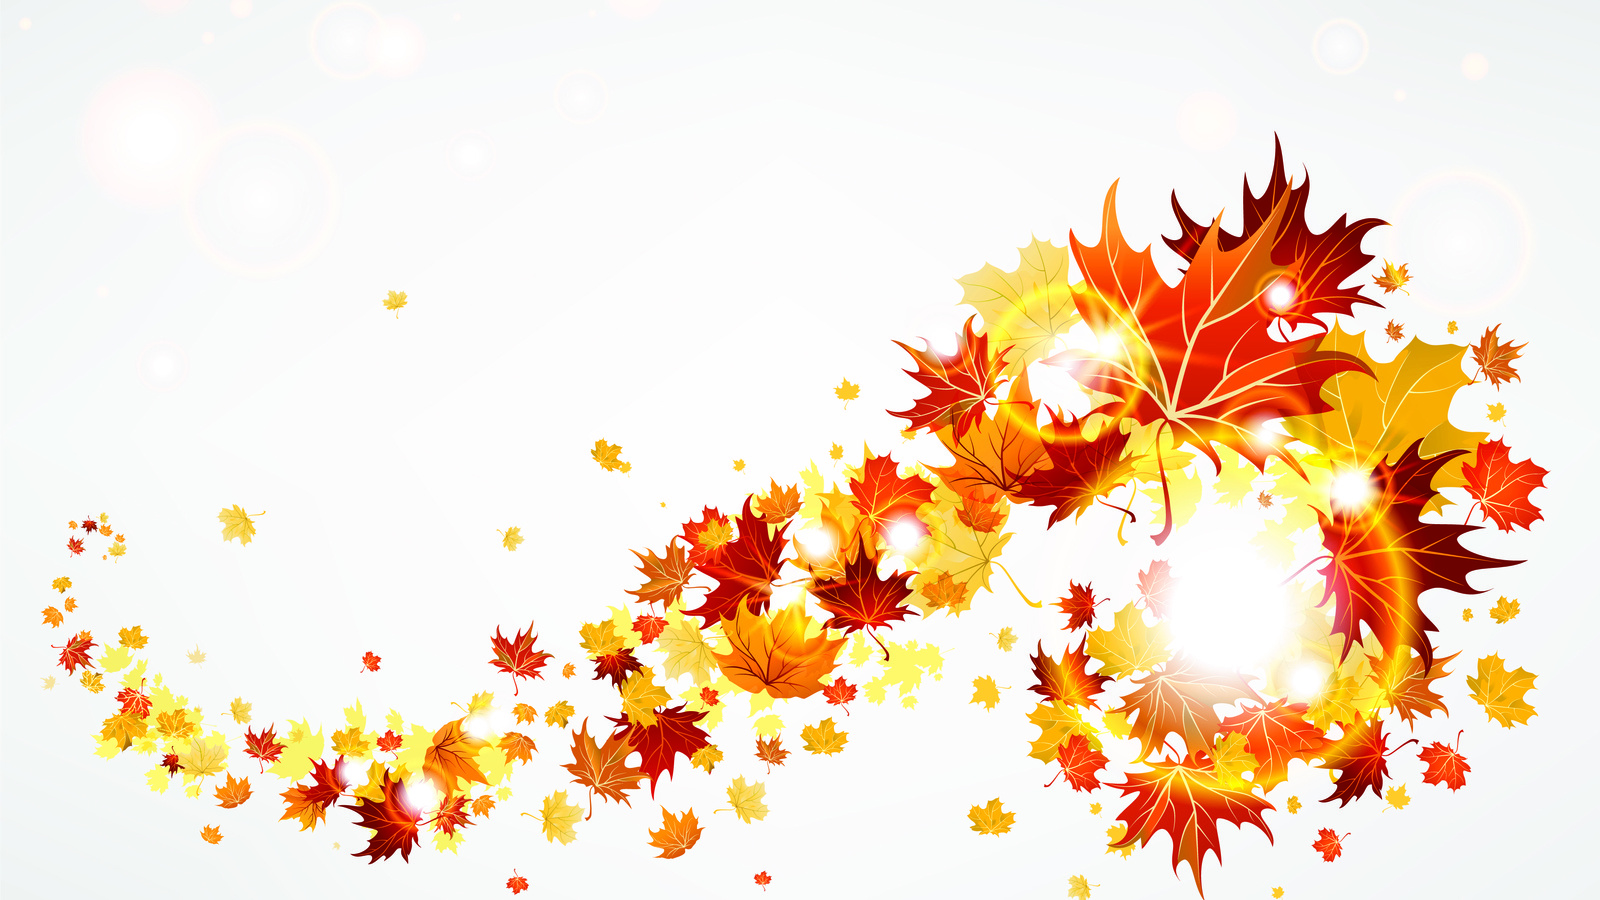 Скачать обои бесплатно Фон, Листья, Осень картинка на рабочий стол ПК